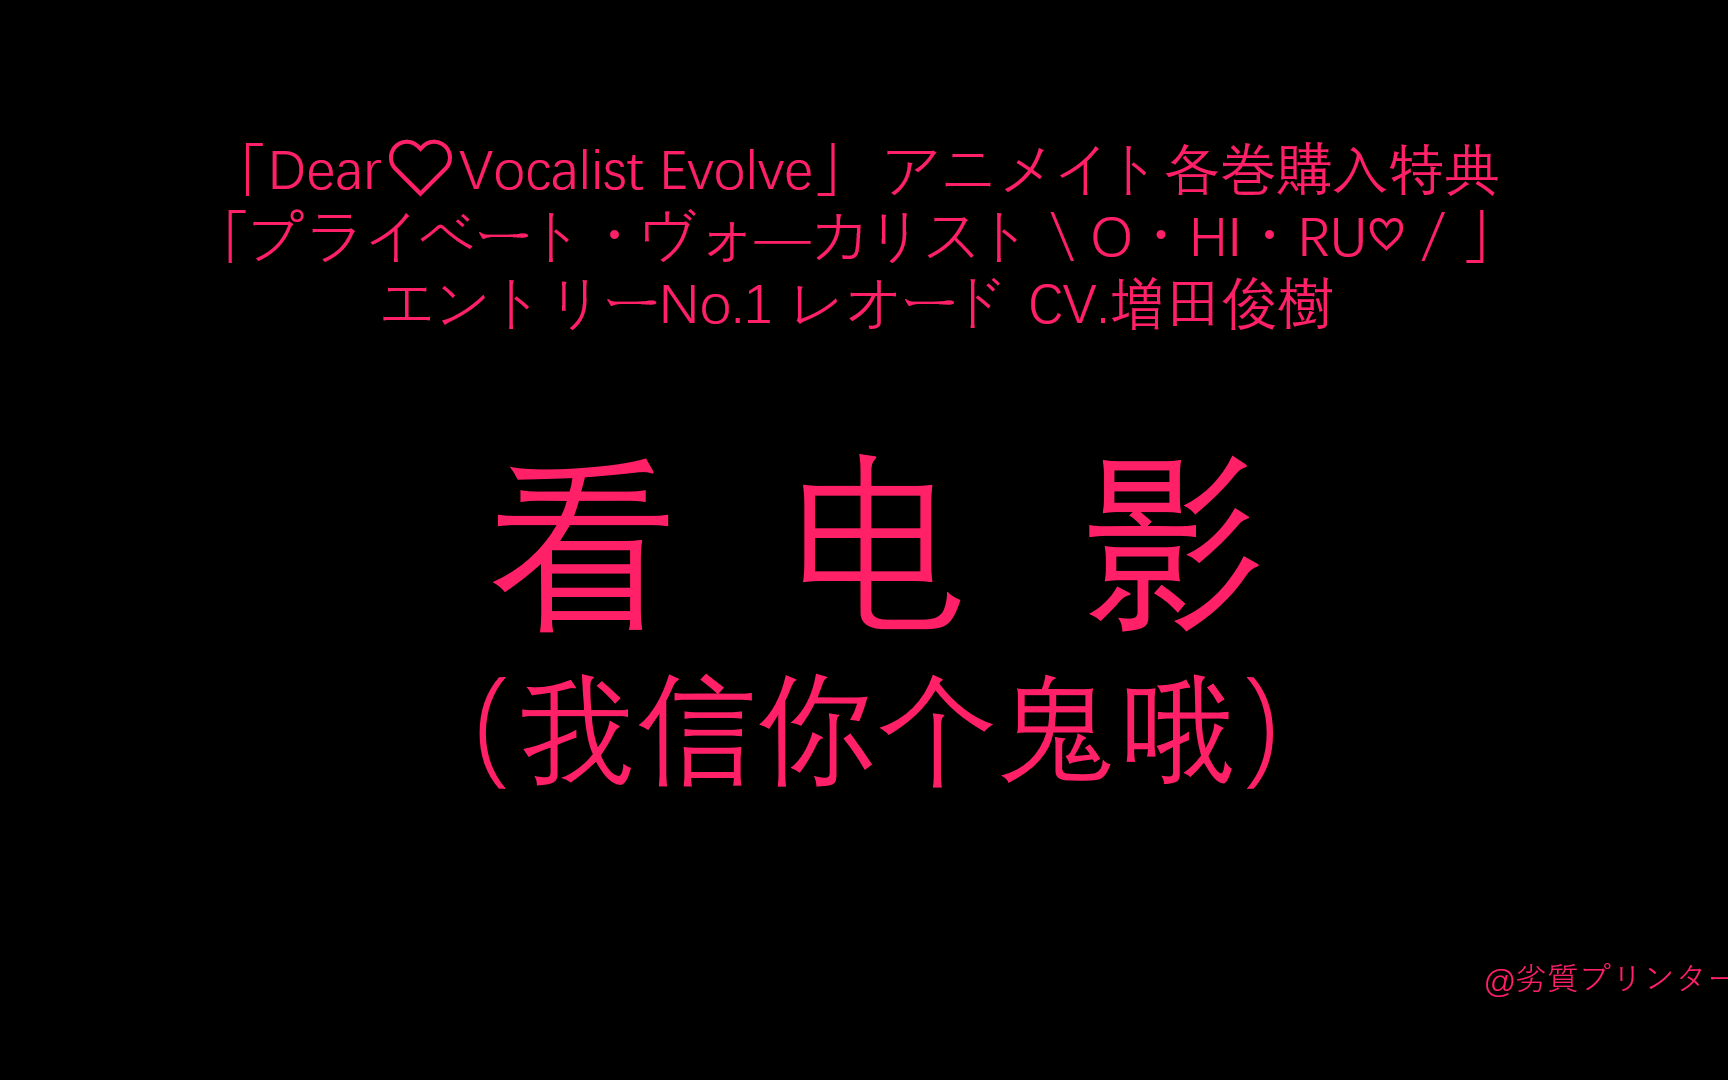 【字幕】【Dear Vocalist Evolve】【A店特典】Reodo/レオード CV.増田俊樹